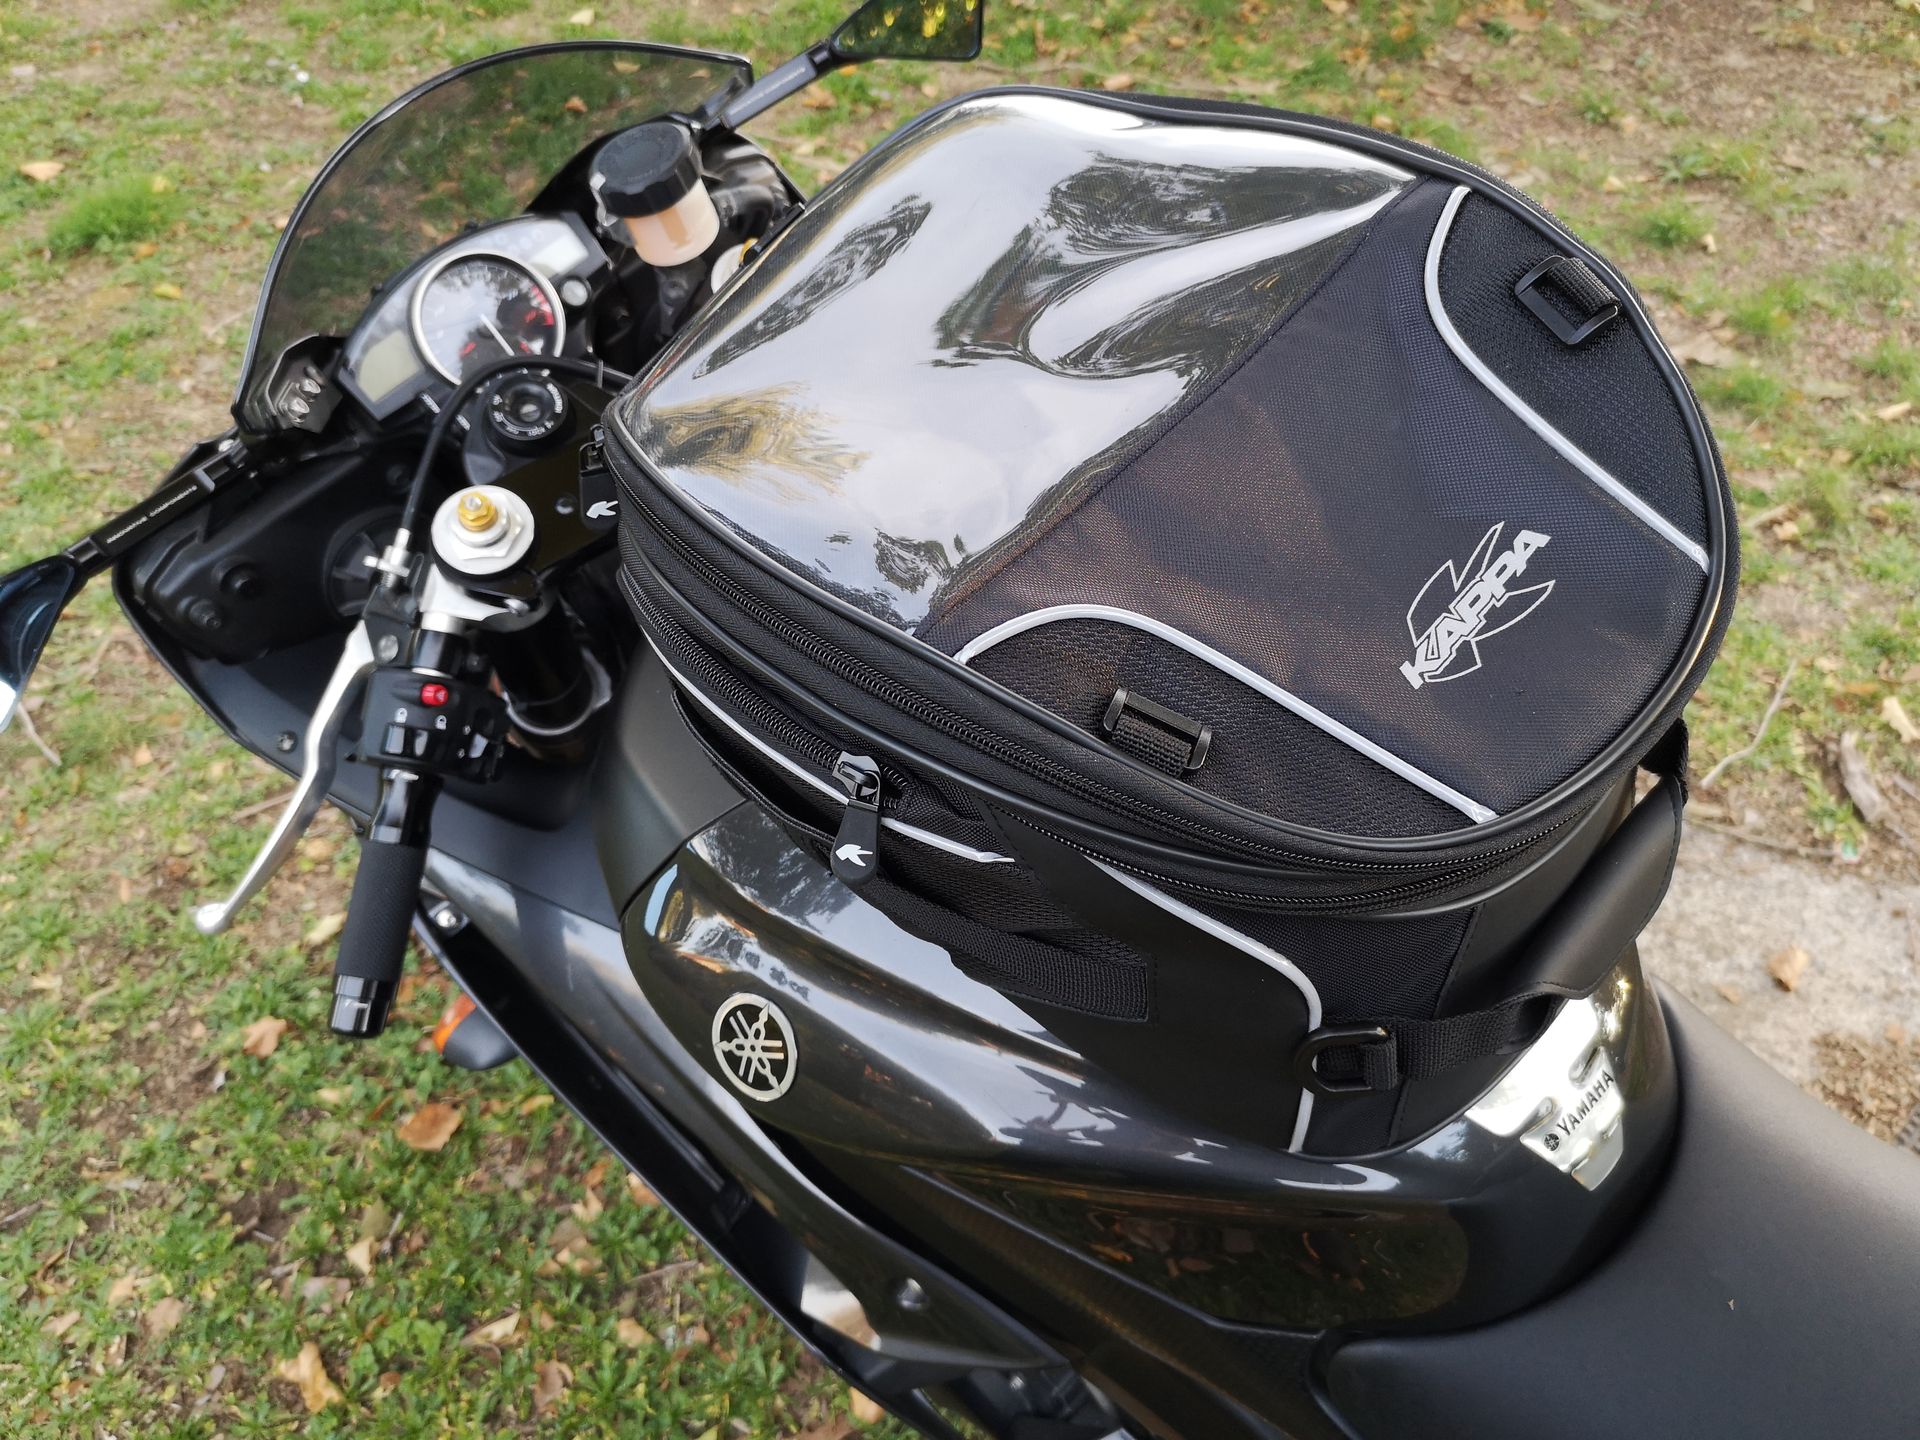 QINGTIAN Super Sacoche de réservoir de Carburant de Moto et Moto avec Sacoche de Selle de Voyage GPS magnétique,imperméable,Tissu Oxford